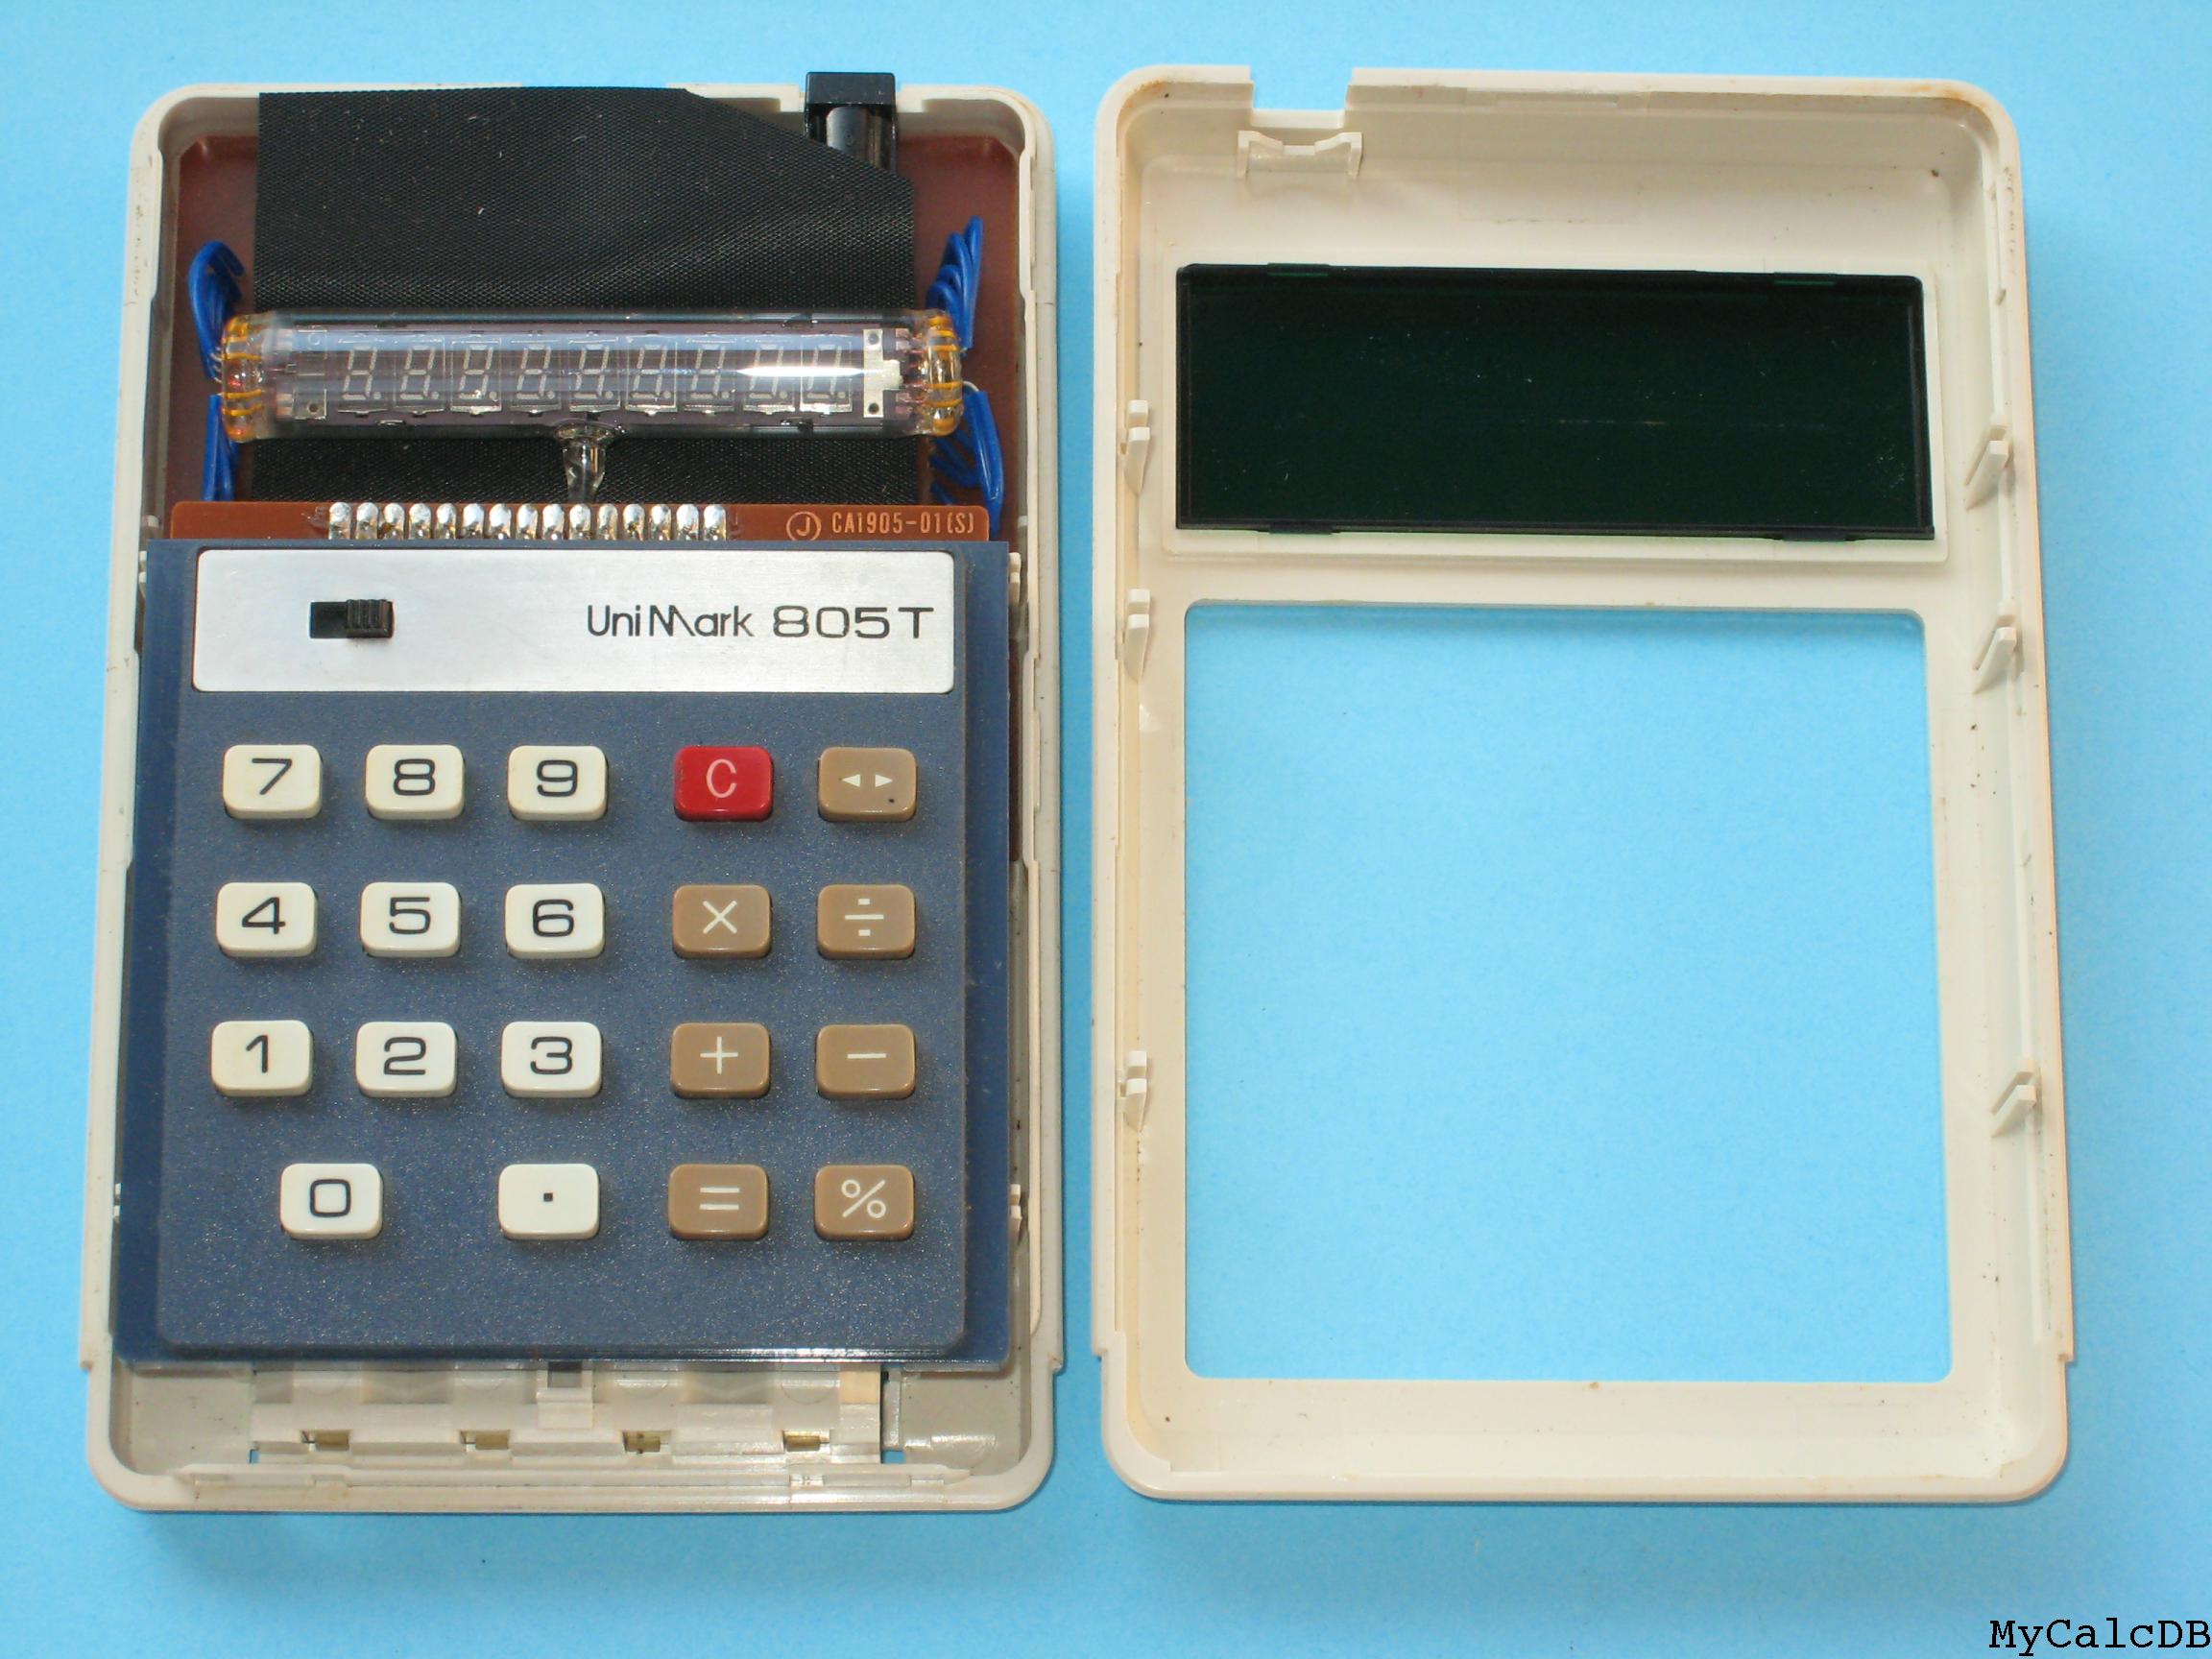 Unimark 805T